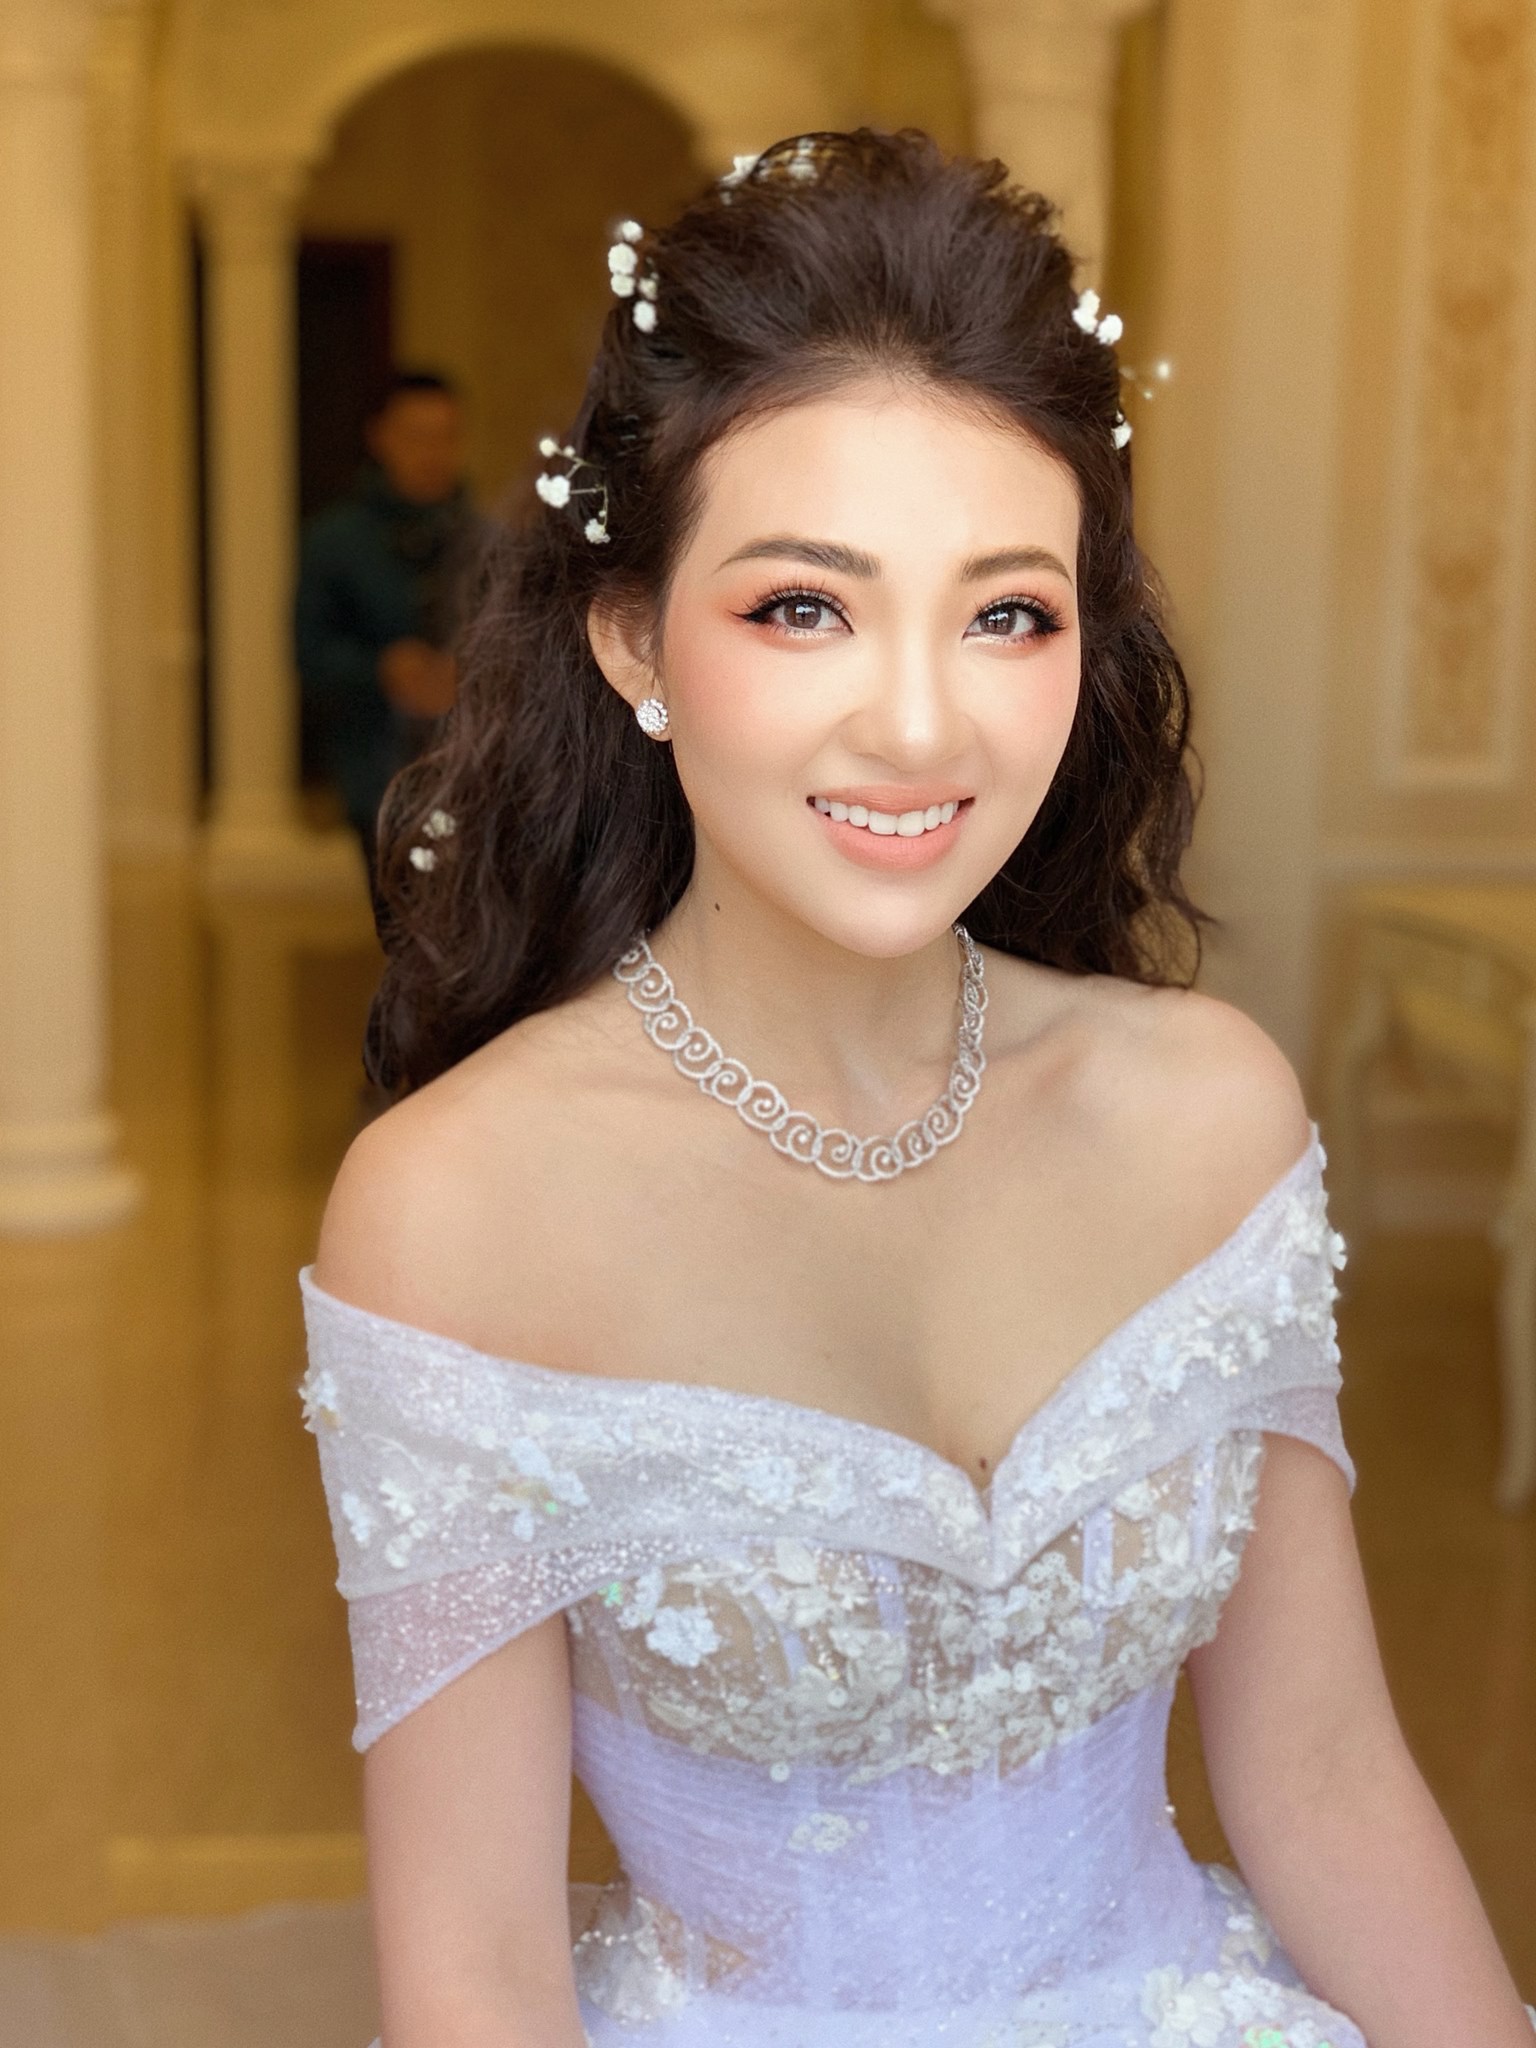 Bộ ảnh cưới đẹp như mơ cùng gia thế khủng của cô dâu vàng đeo trĩu cổ sống trong lâu đài 7 tầng ở Nam Định - Ảnh 17.